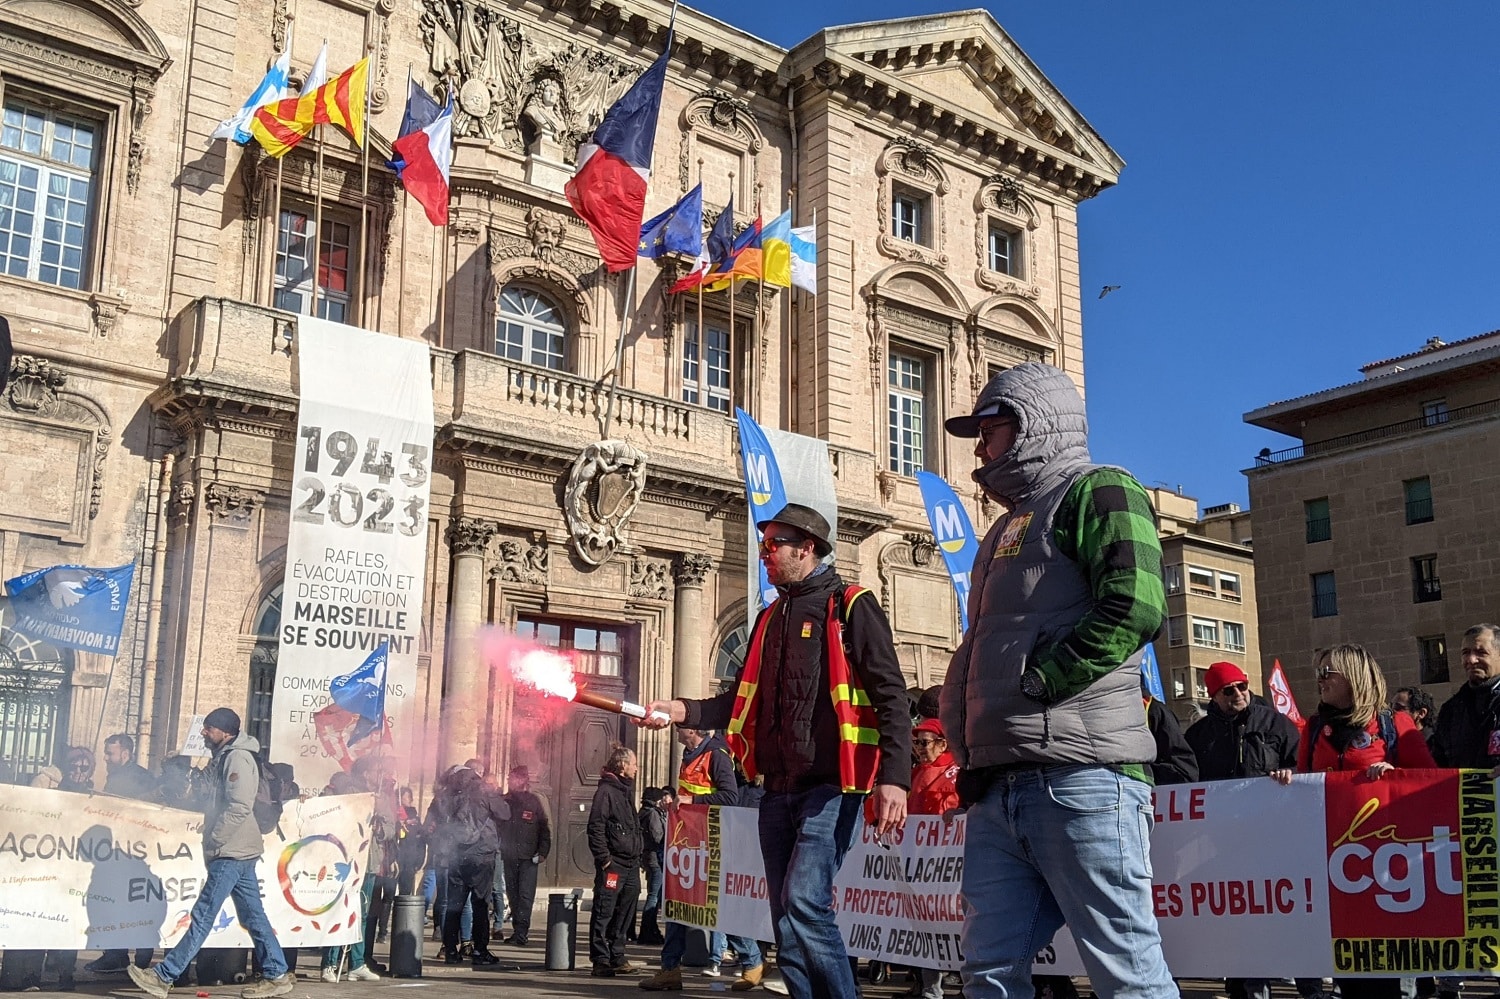 7 mars, Réforme des retraites : les perturbations attendues pour la grève du 7 mars à Marseille, Made in Marseille